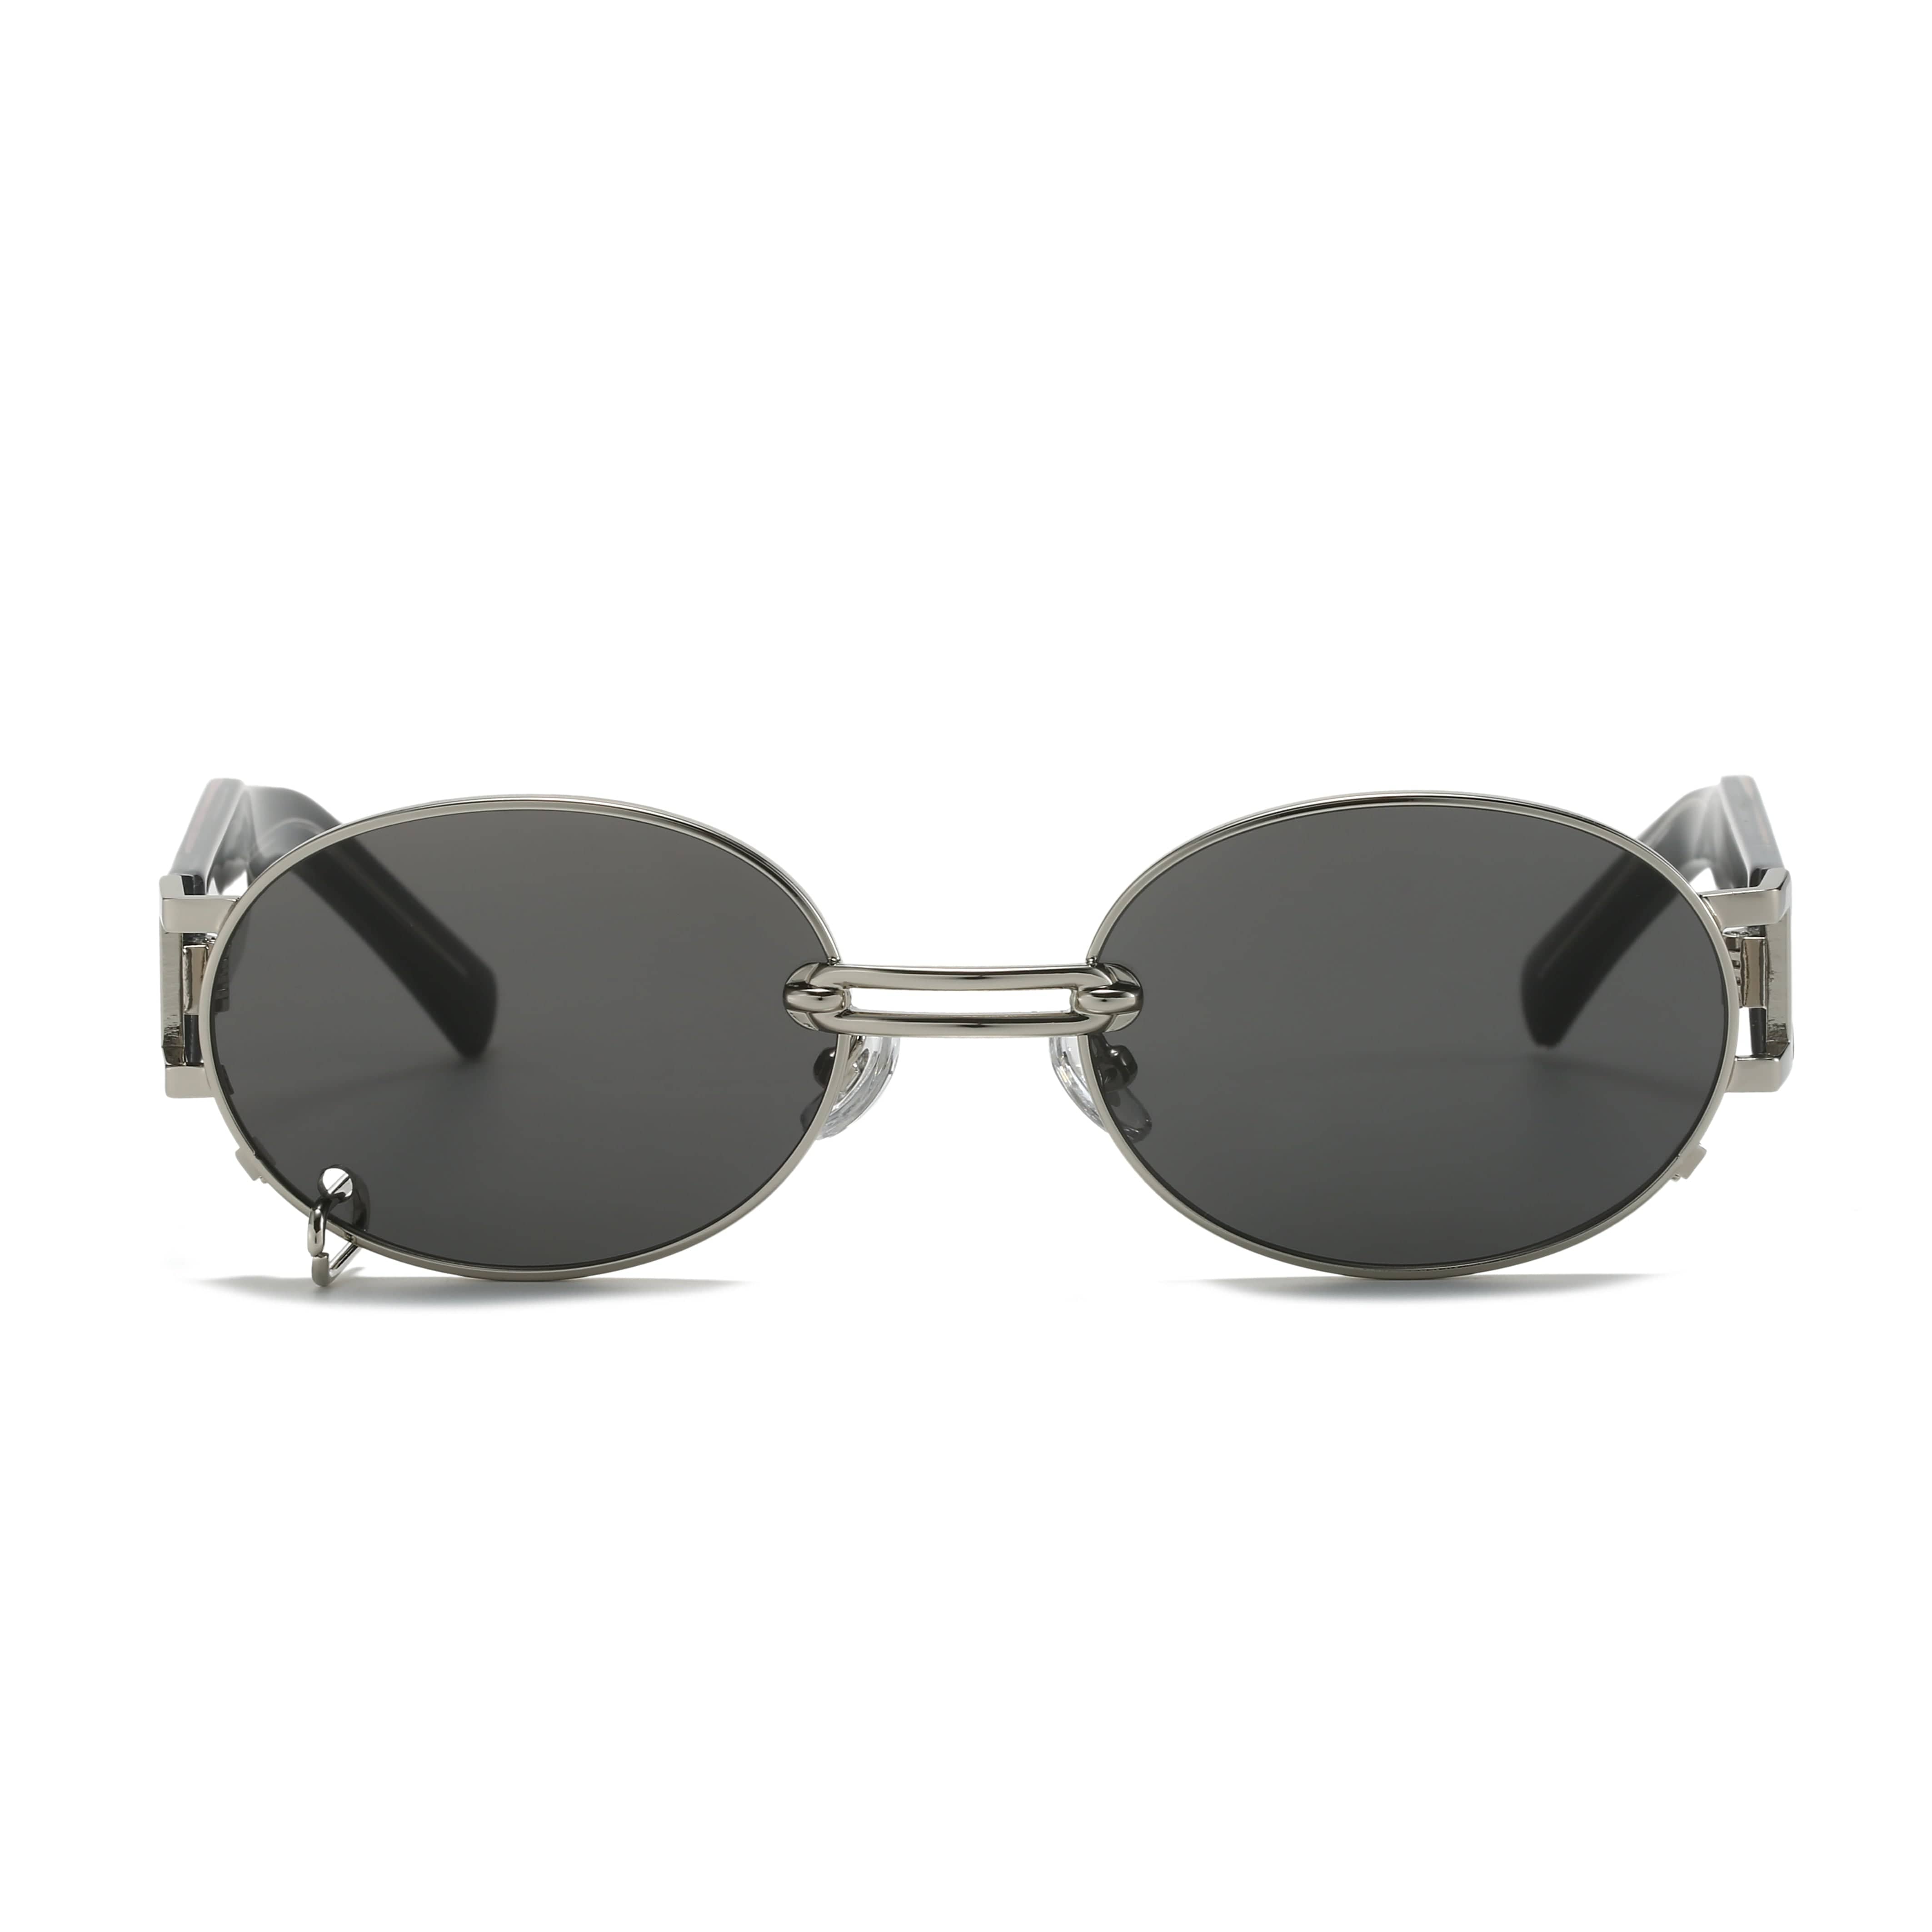 GIUSTIZIERI VECCHI Sunglasses Small / Black with Silver MegaVolt Uno